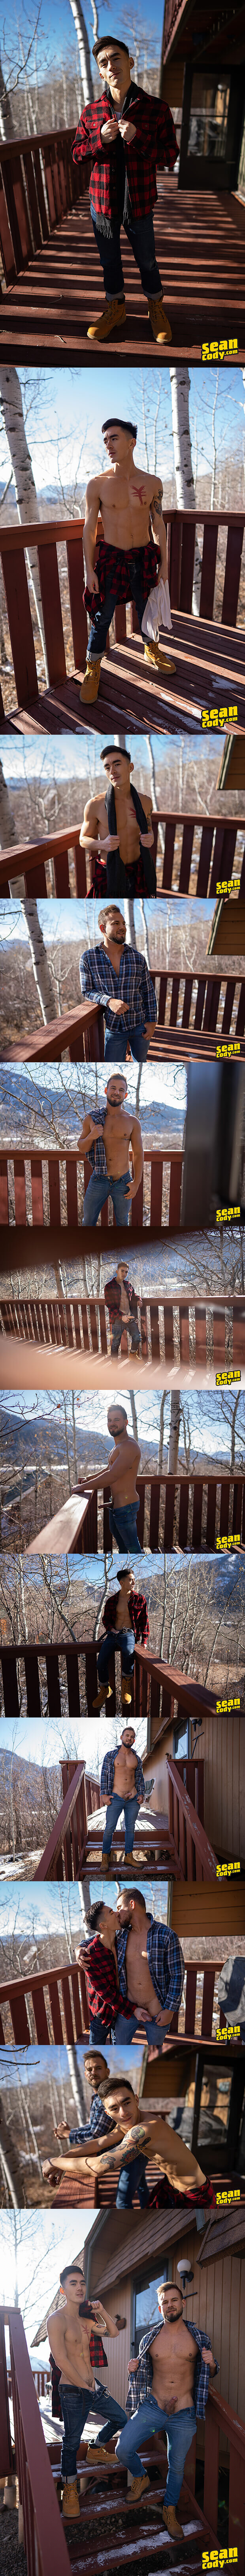 Sean Cody | The Cabin, Pt. 2 (Josh & Cody Seiya)